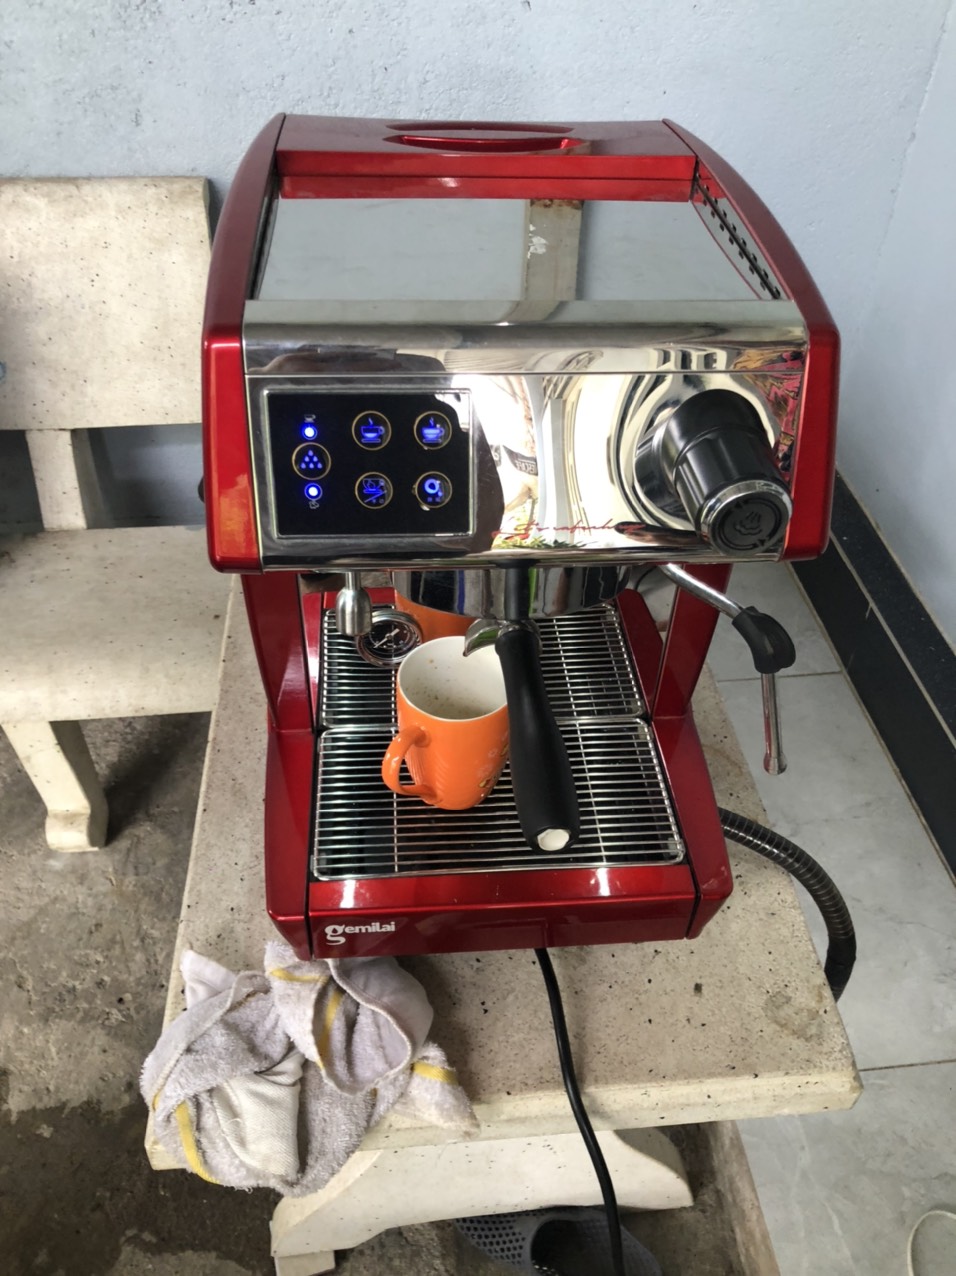 ca4 - Sửa máy cafe Gemilai không lên nguồn chính hãng tại Sài Gòn